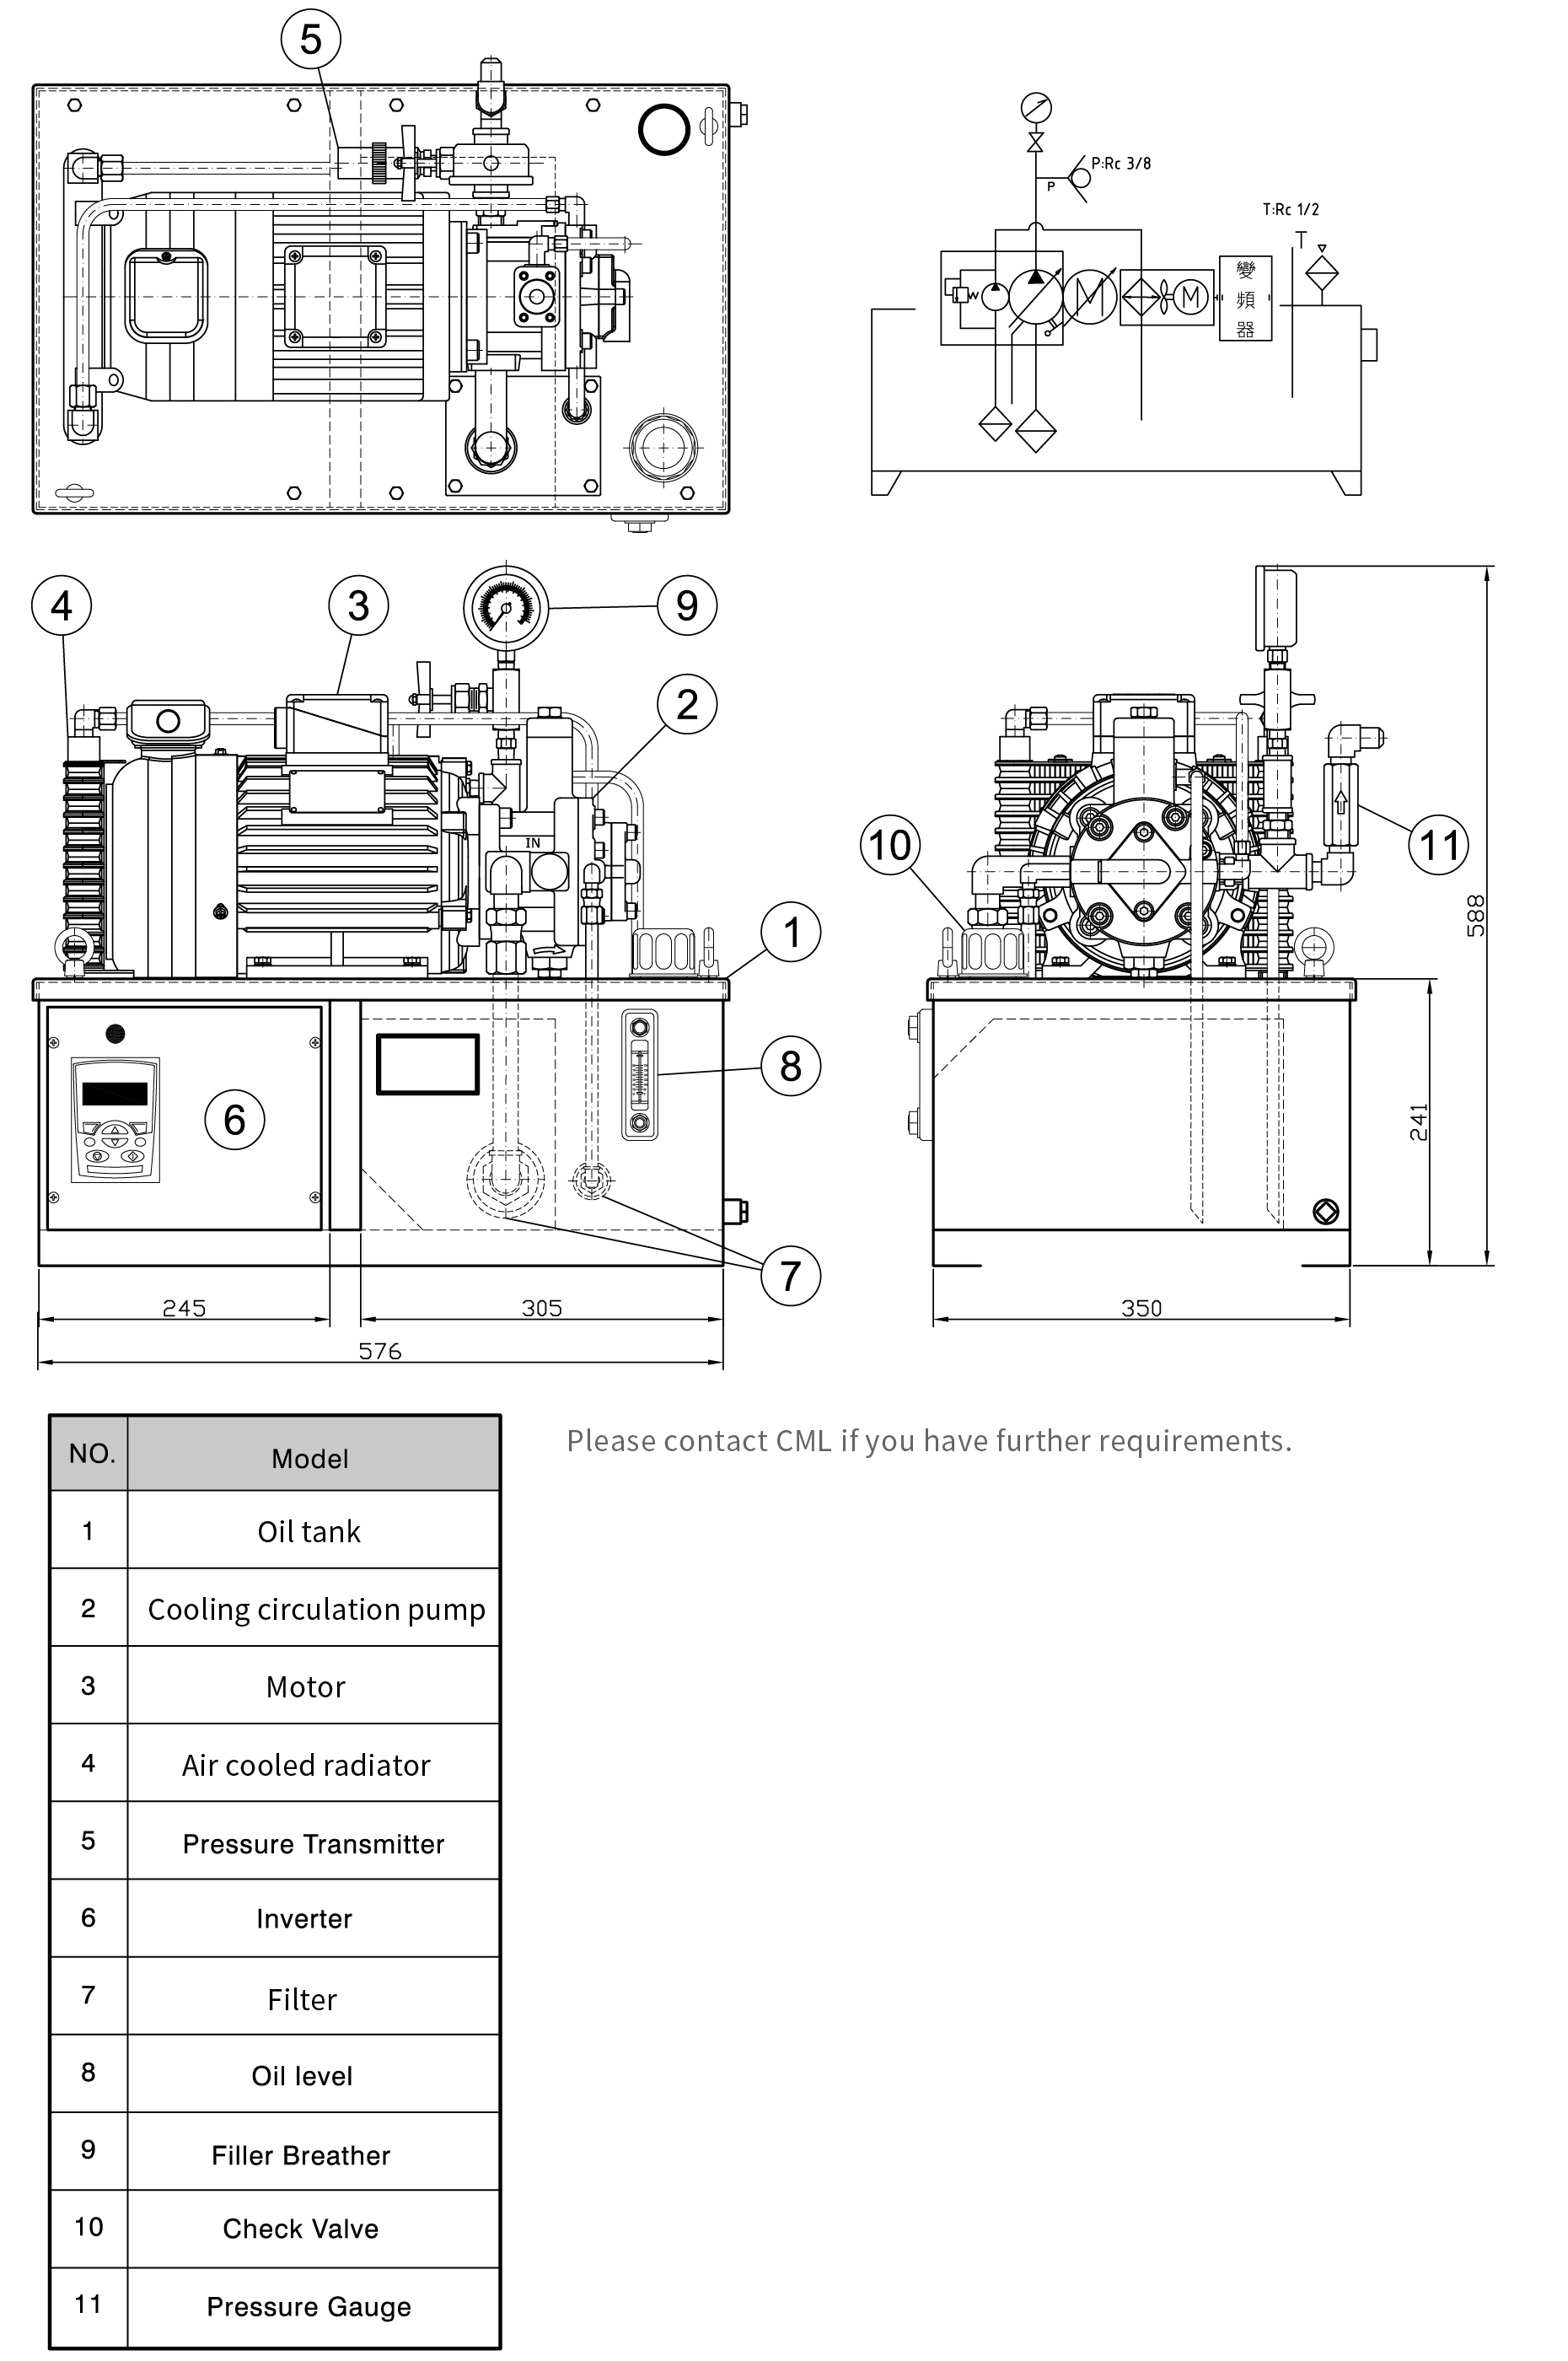 CML Serie HPU Unità di potenza ibrida a risparmio energetico con pompa di circolazione variabile per raffreddamento misurazione